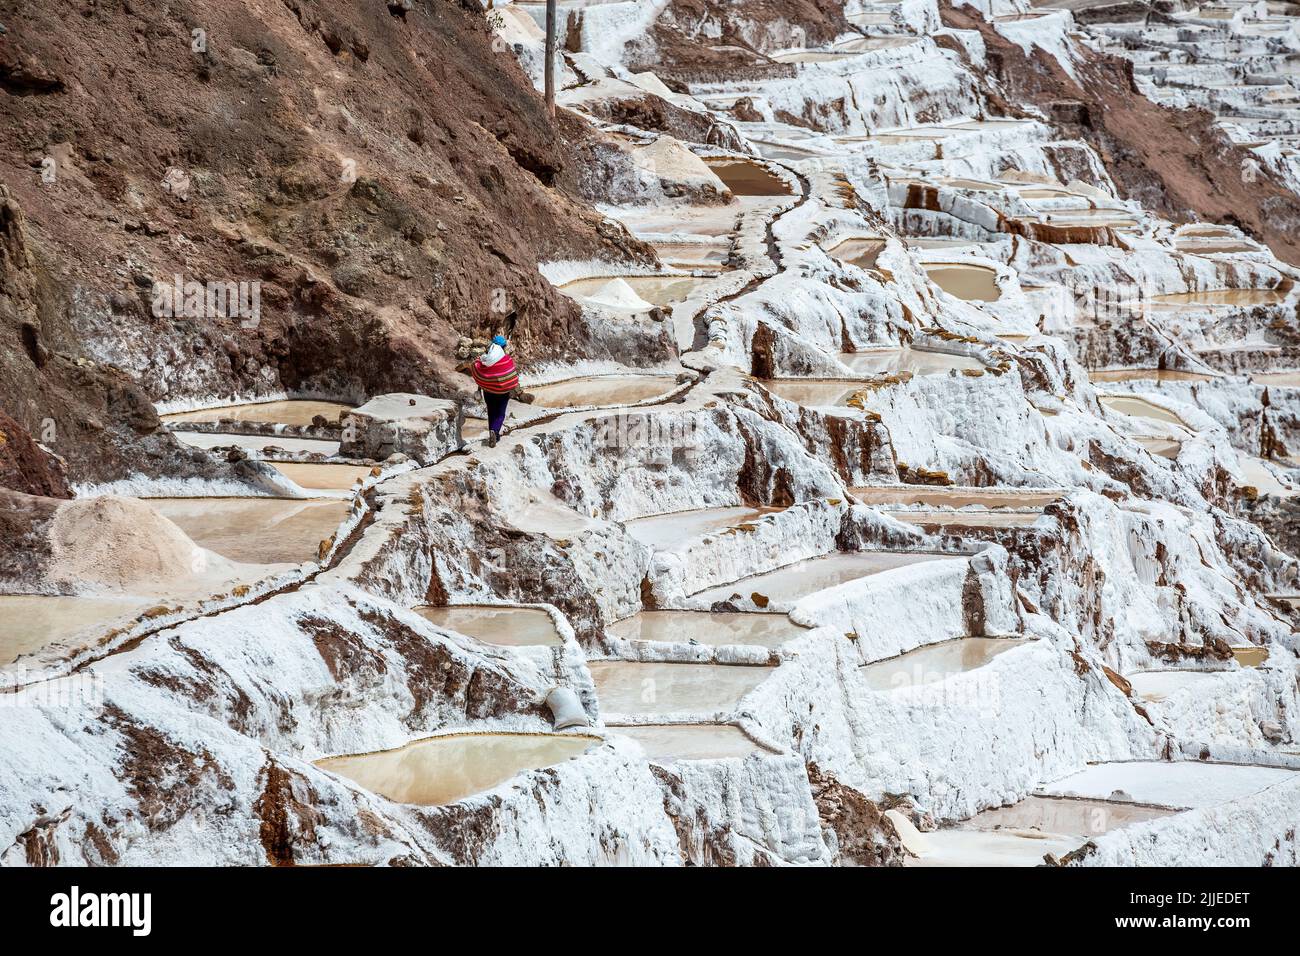 Worker walking through salt pans, Salineras de Maras salt mines, Cusco, Peru Stock Photo